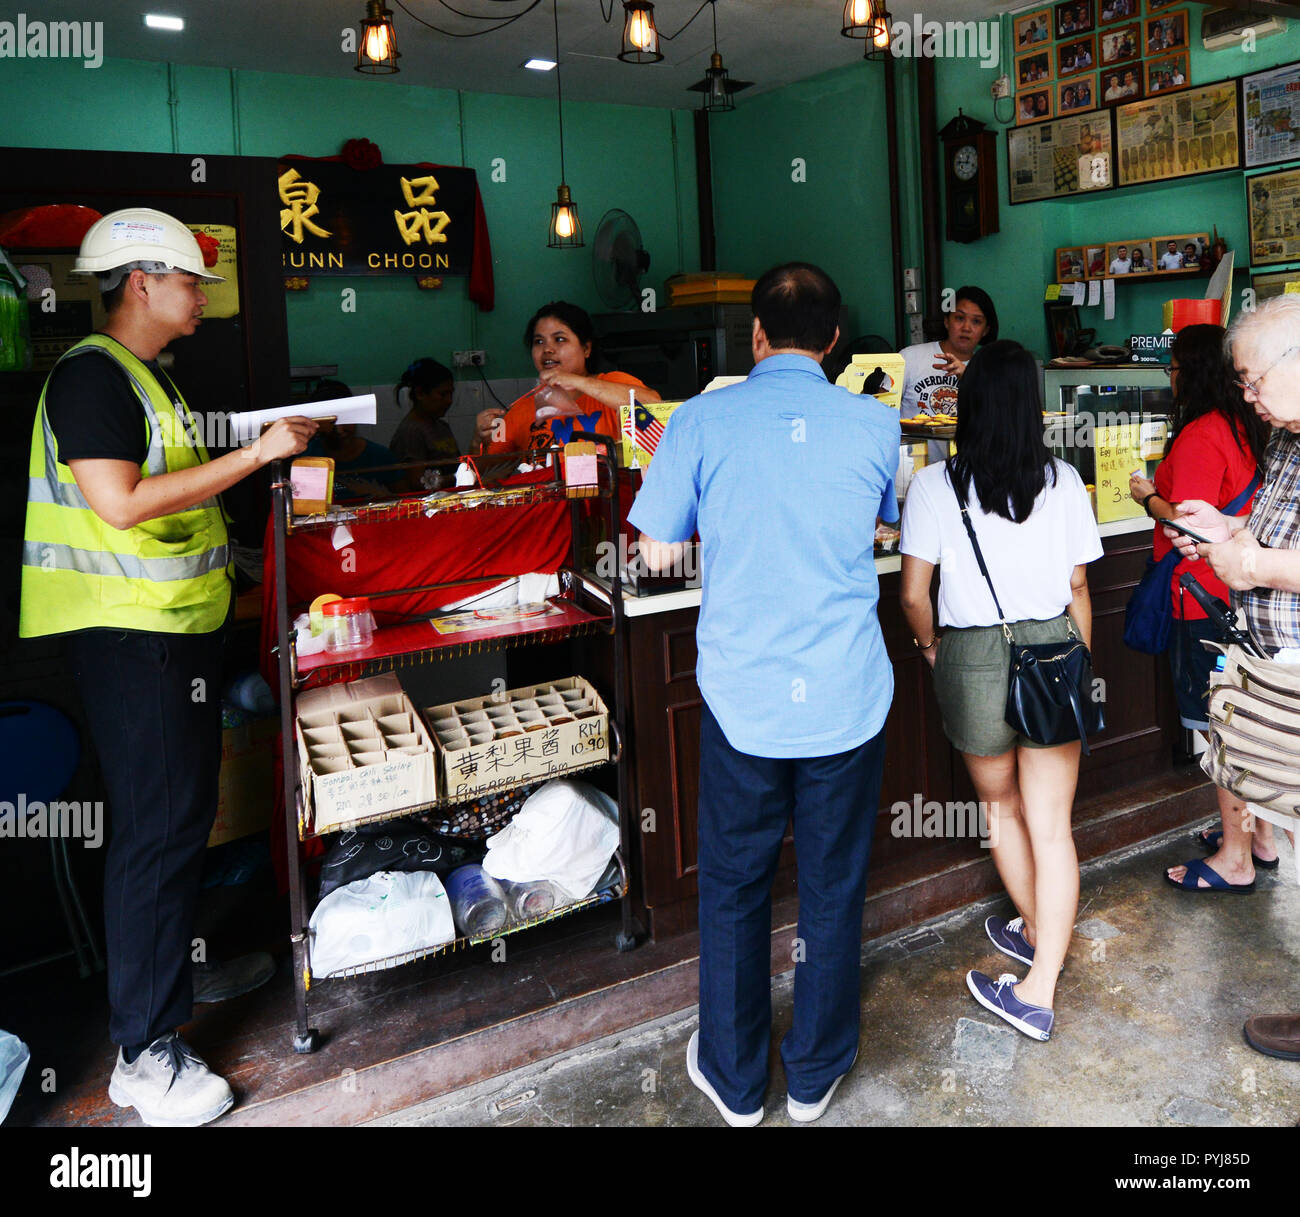 Bunn Choon Egg Tart shop in Chinatown in Kuala Lumpur. Stock Photo